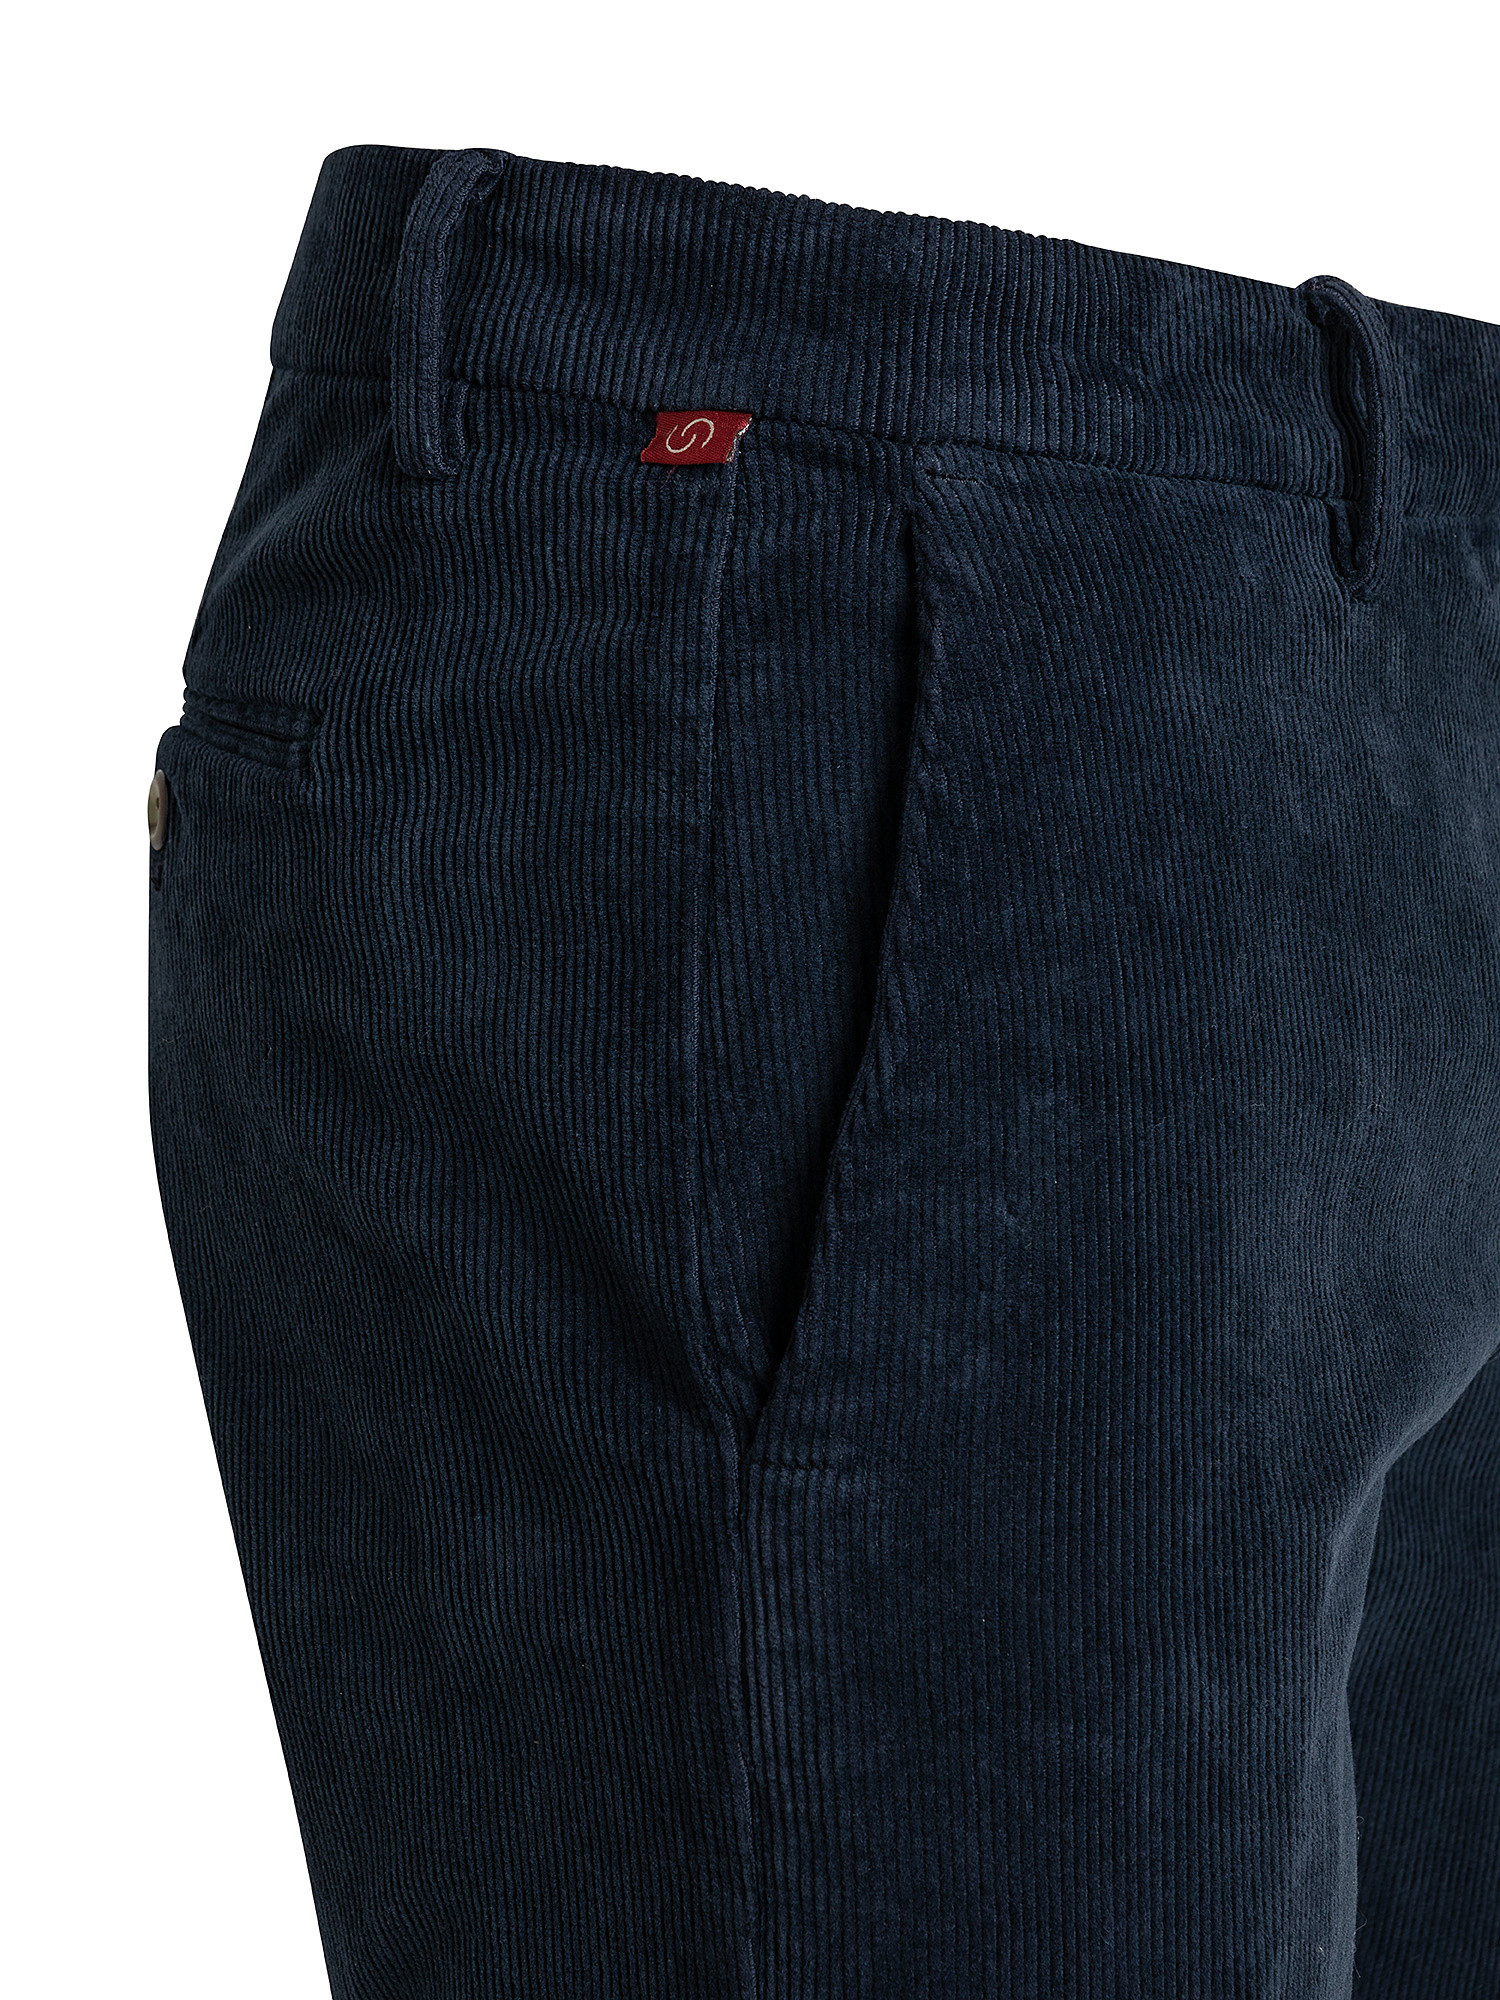 Pantaloni chino, Blu, large image number 2